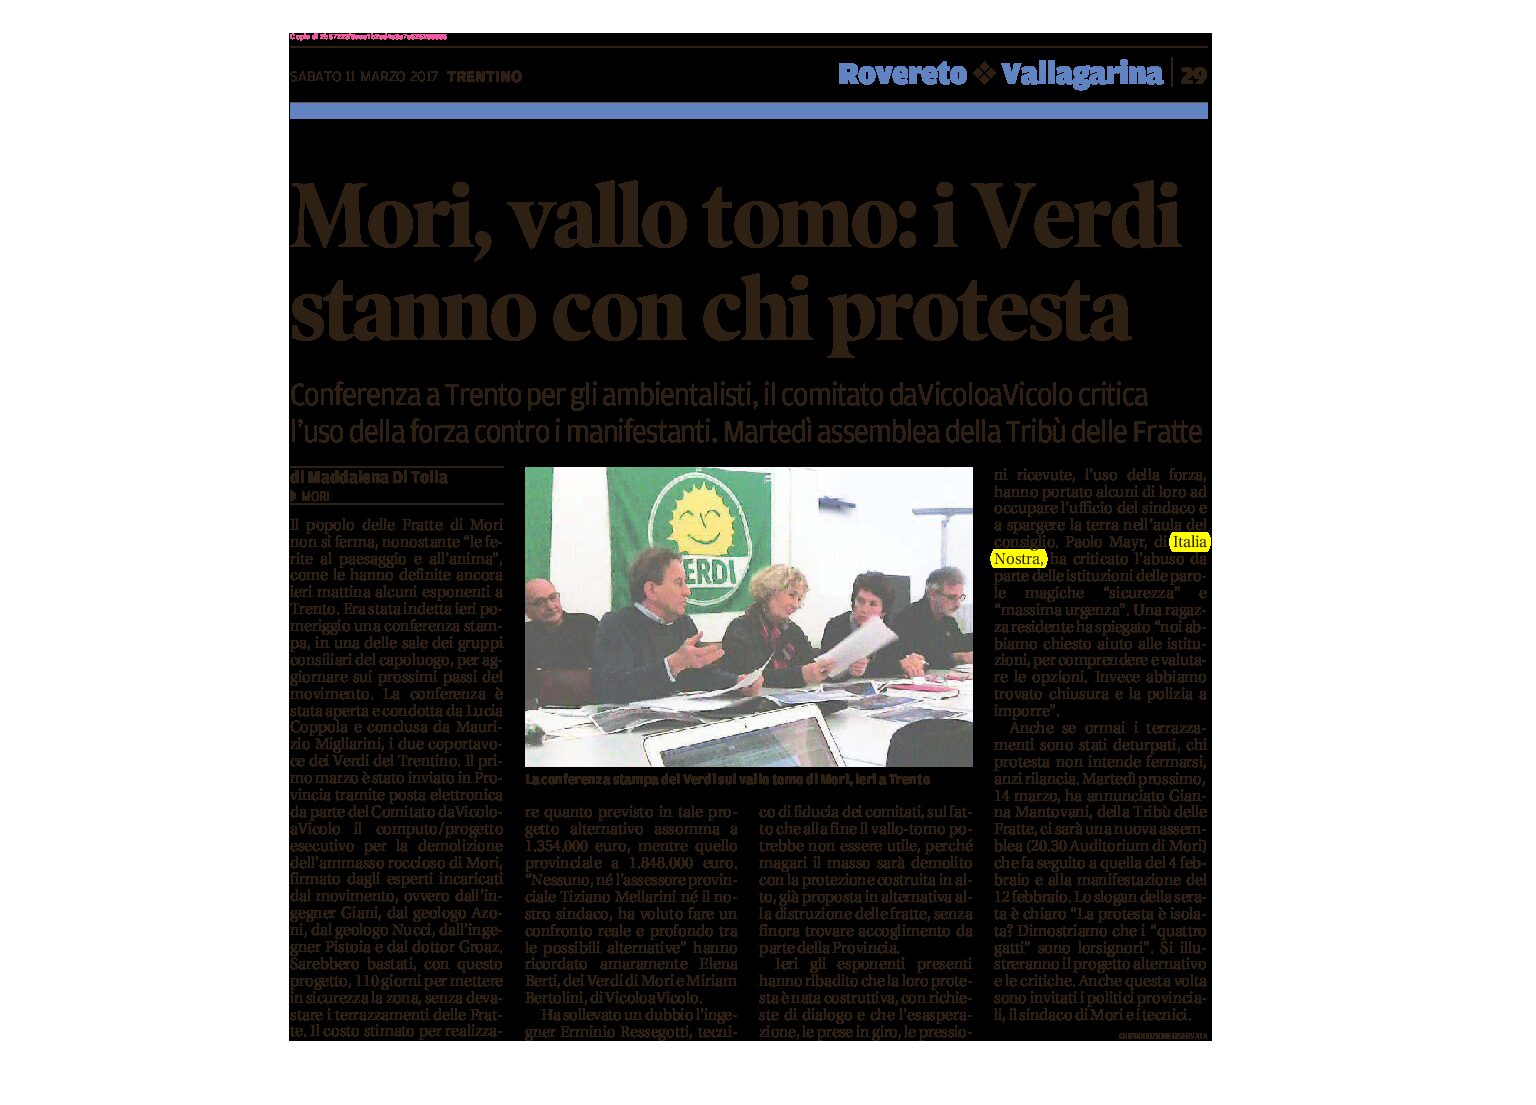 Mori, vallo tomo: i Verdi stanno con chi protesta